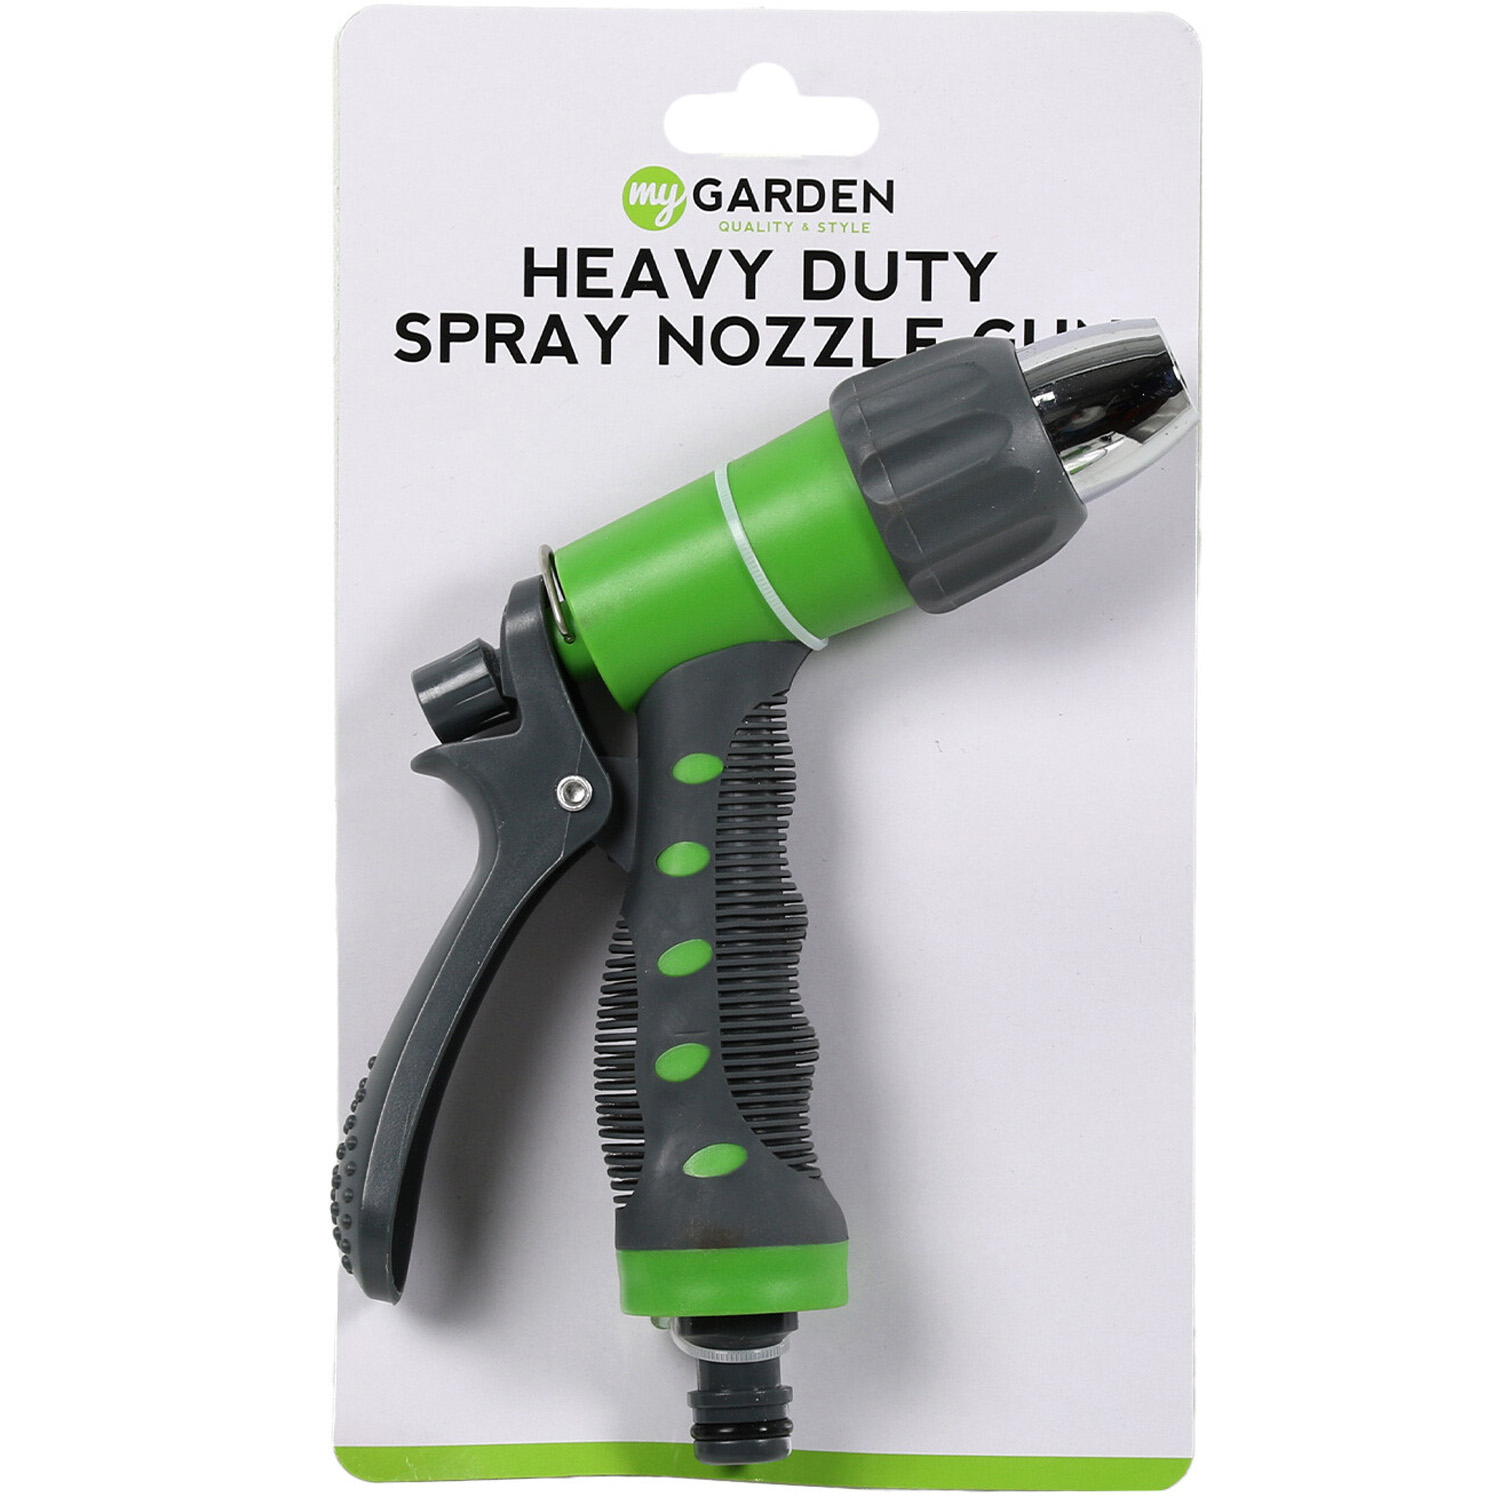 Heavy Duty Spray Nozzle Gun Image